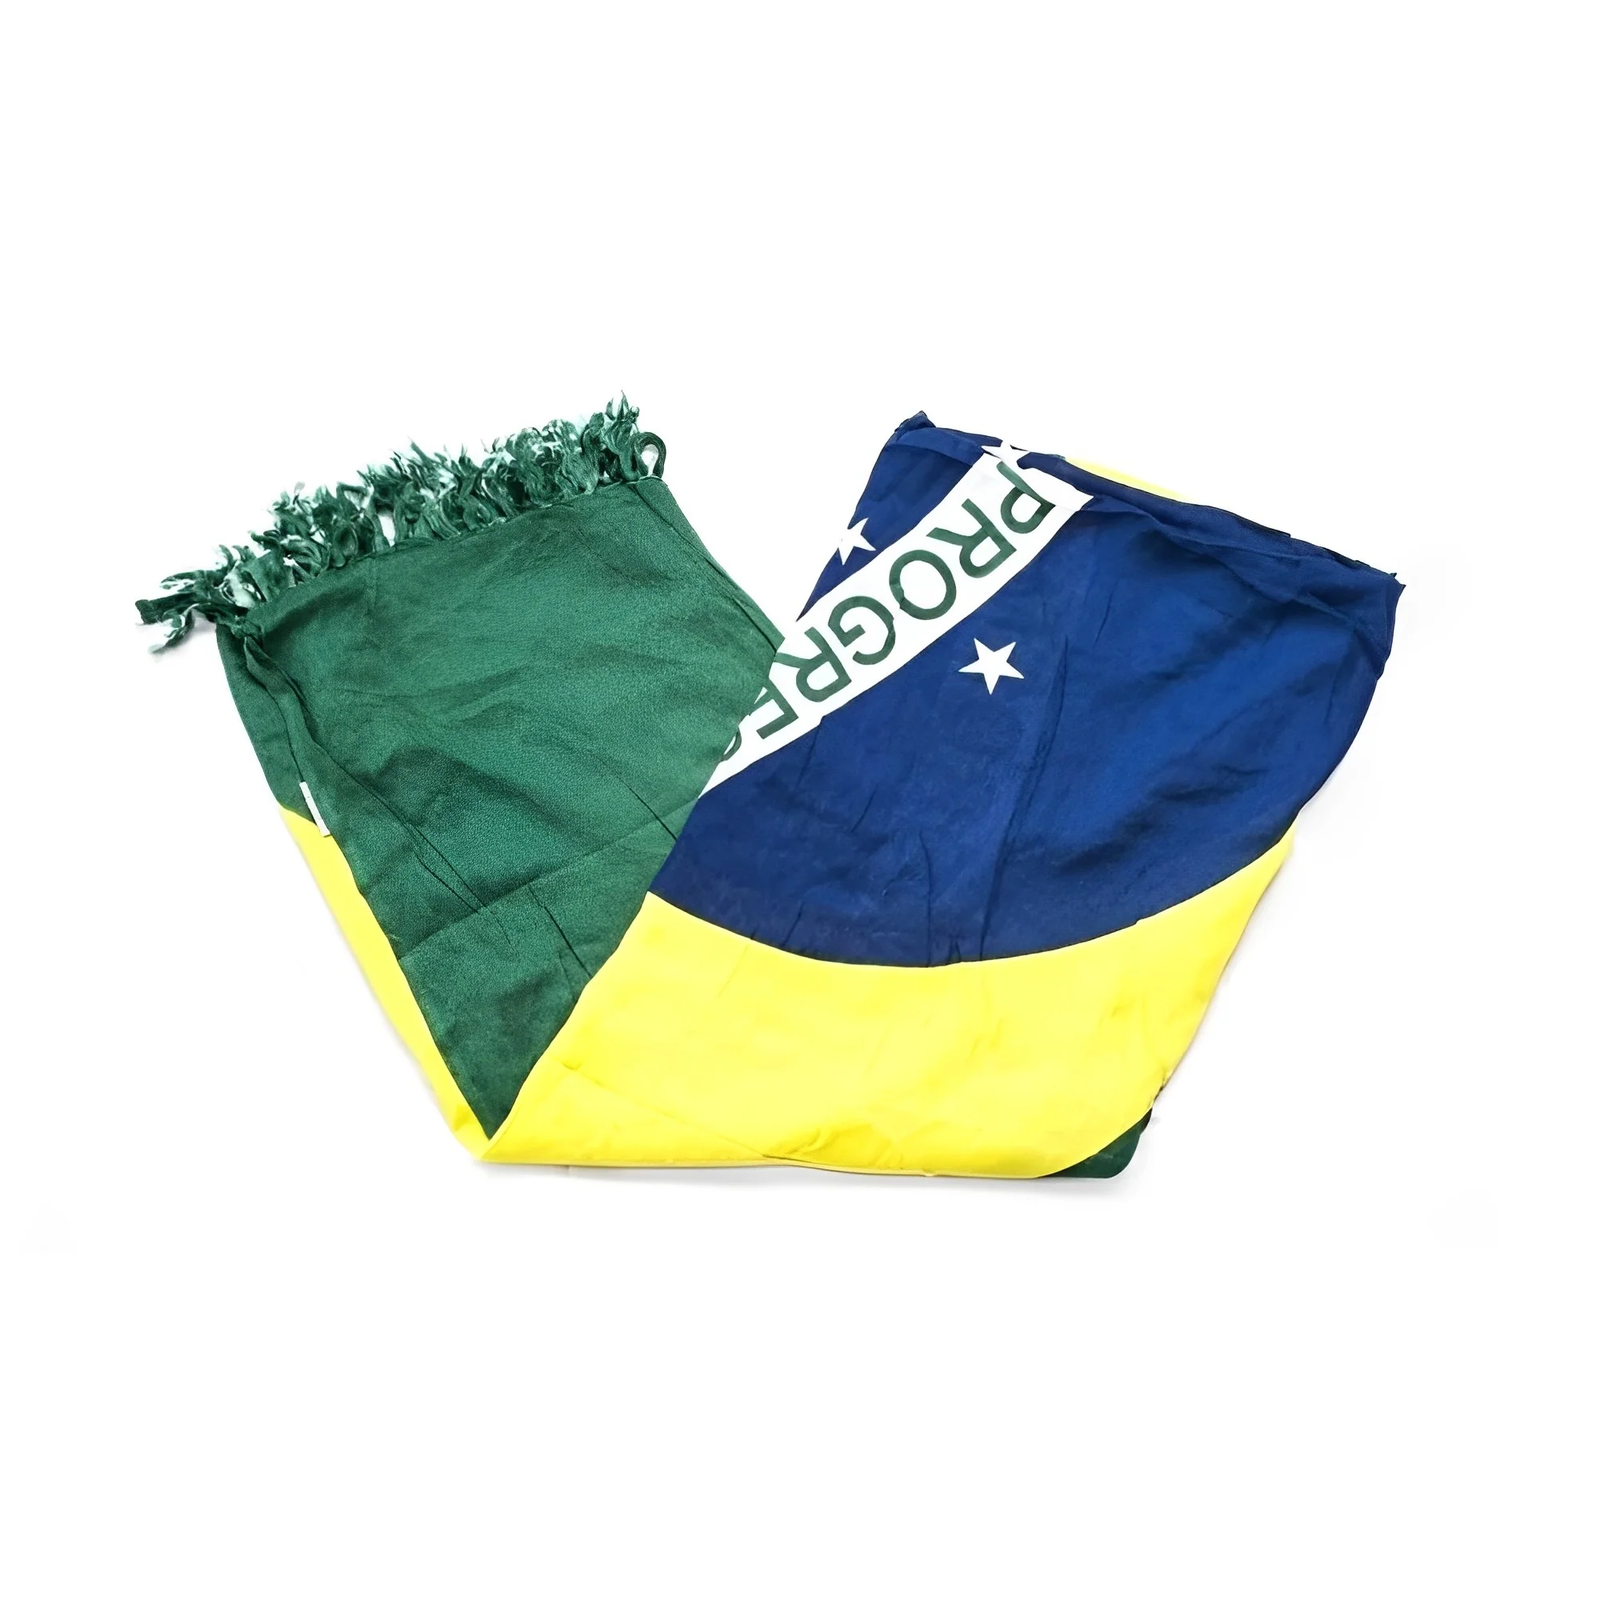 BANDEIRA DO BRASIL CANGA - Verde, Amarelo, Azul e Branco - Toalha de Praia Brasileira (Sarong/Pareo)